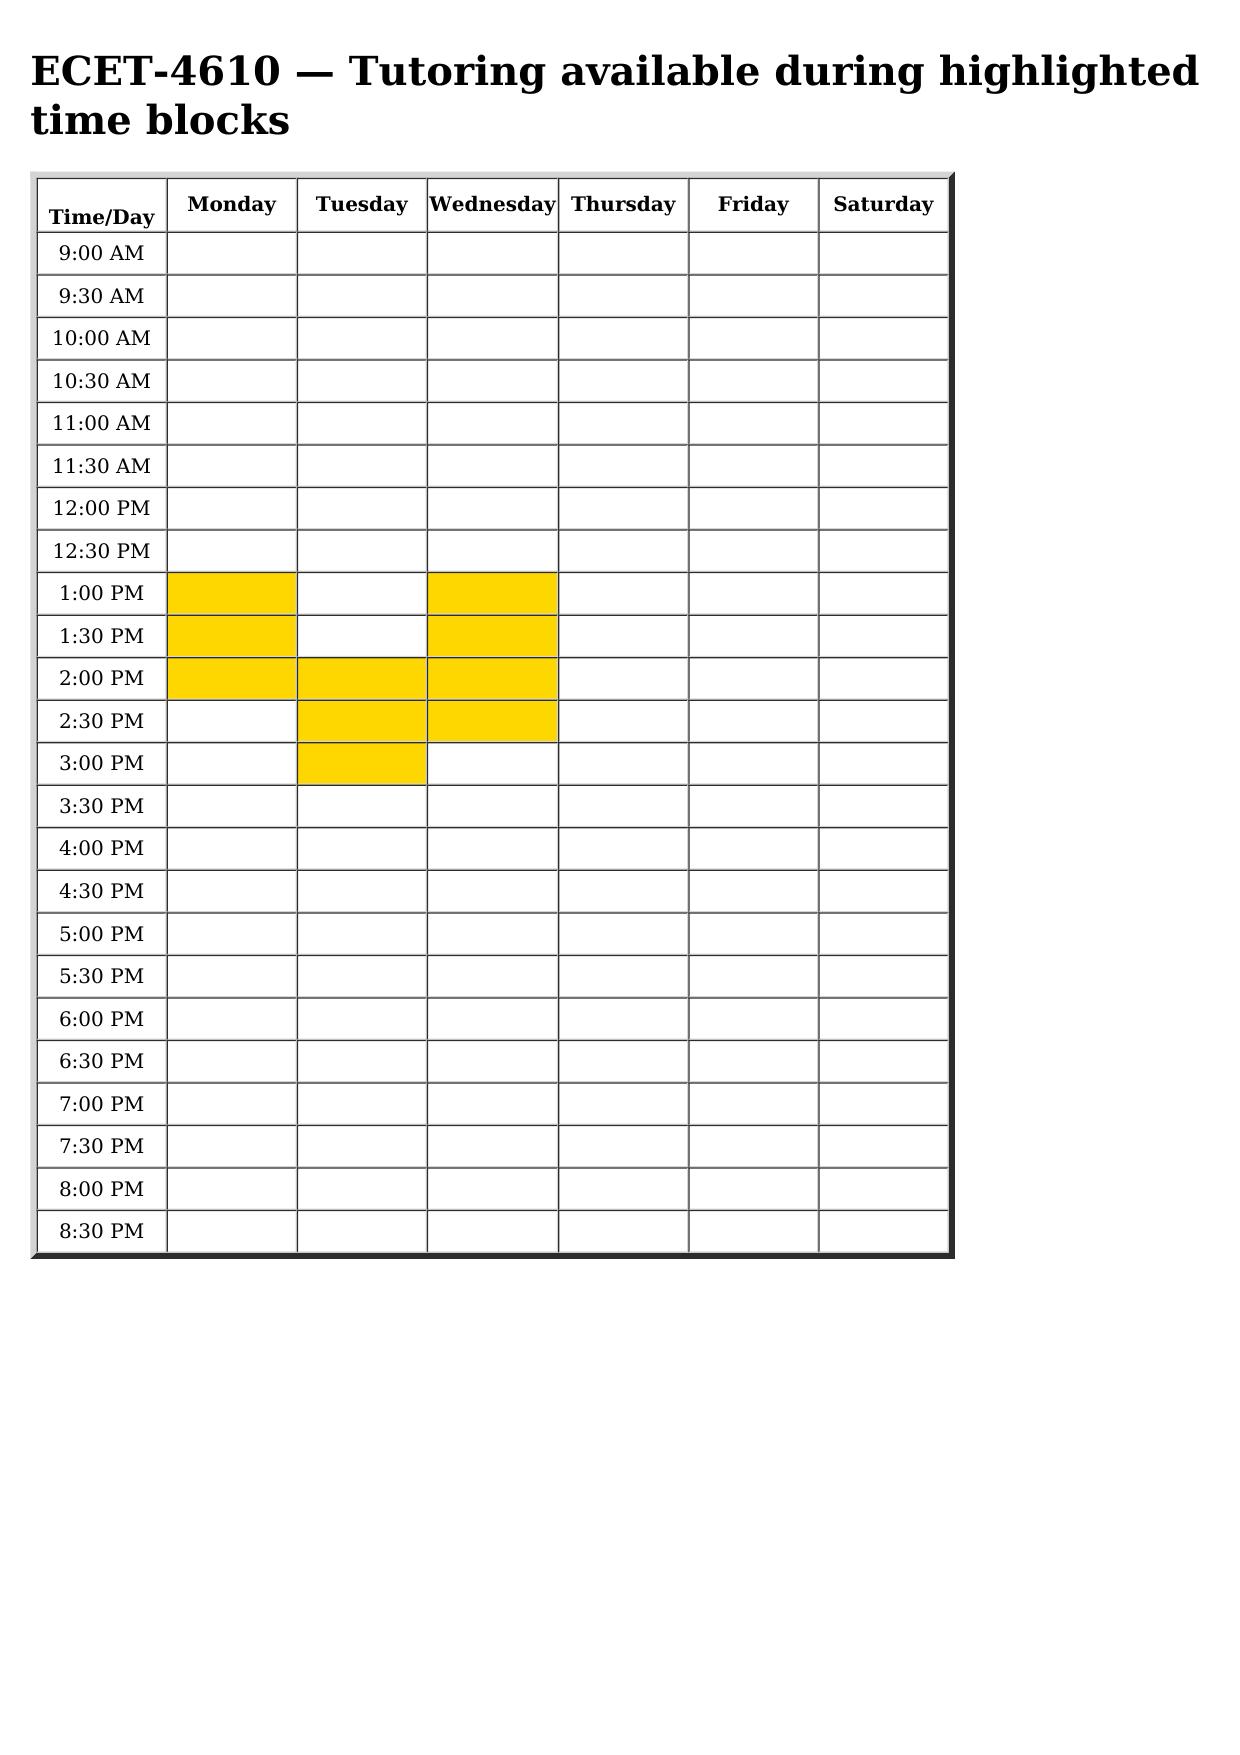 ecet 4610 schedule